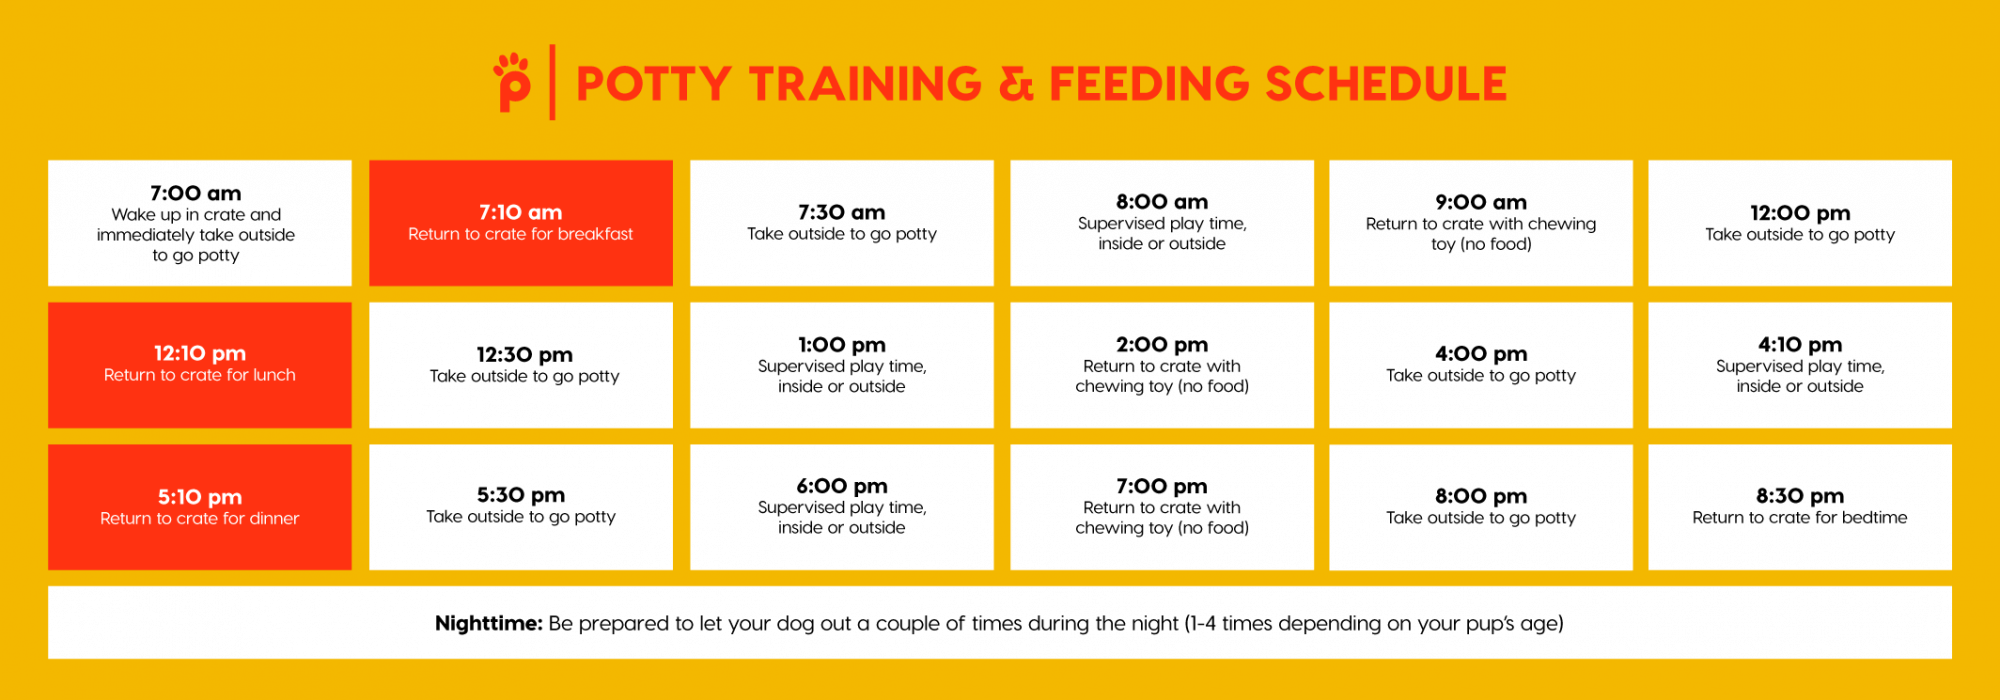 potty training schedule for puppy & feeding schedule 